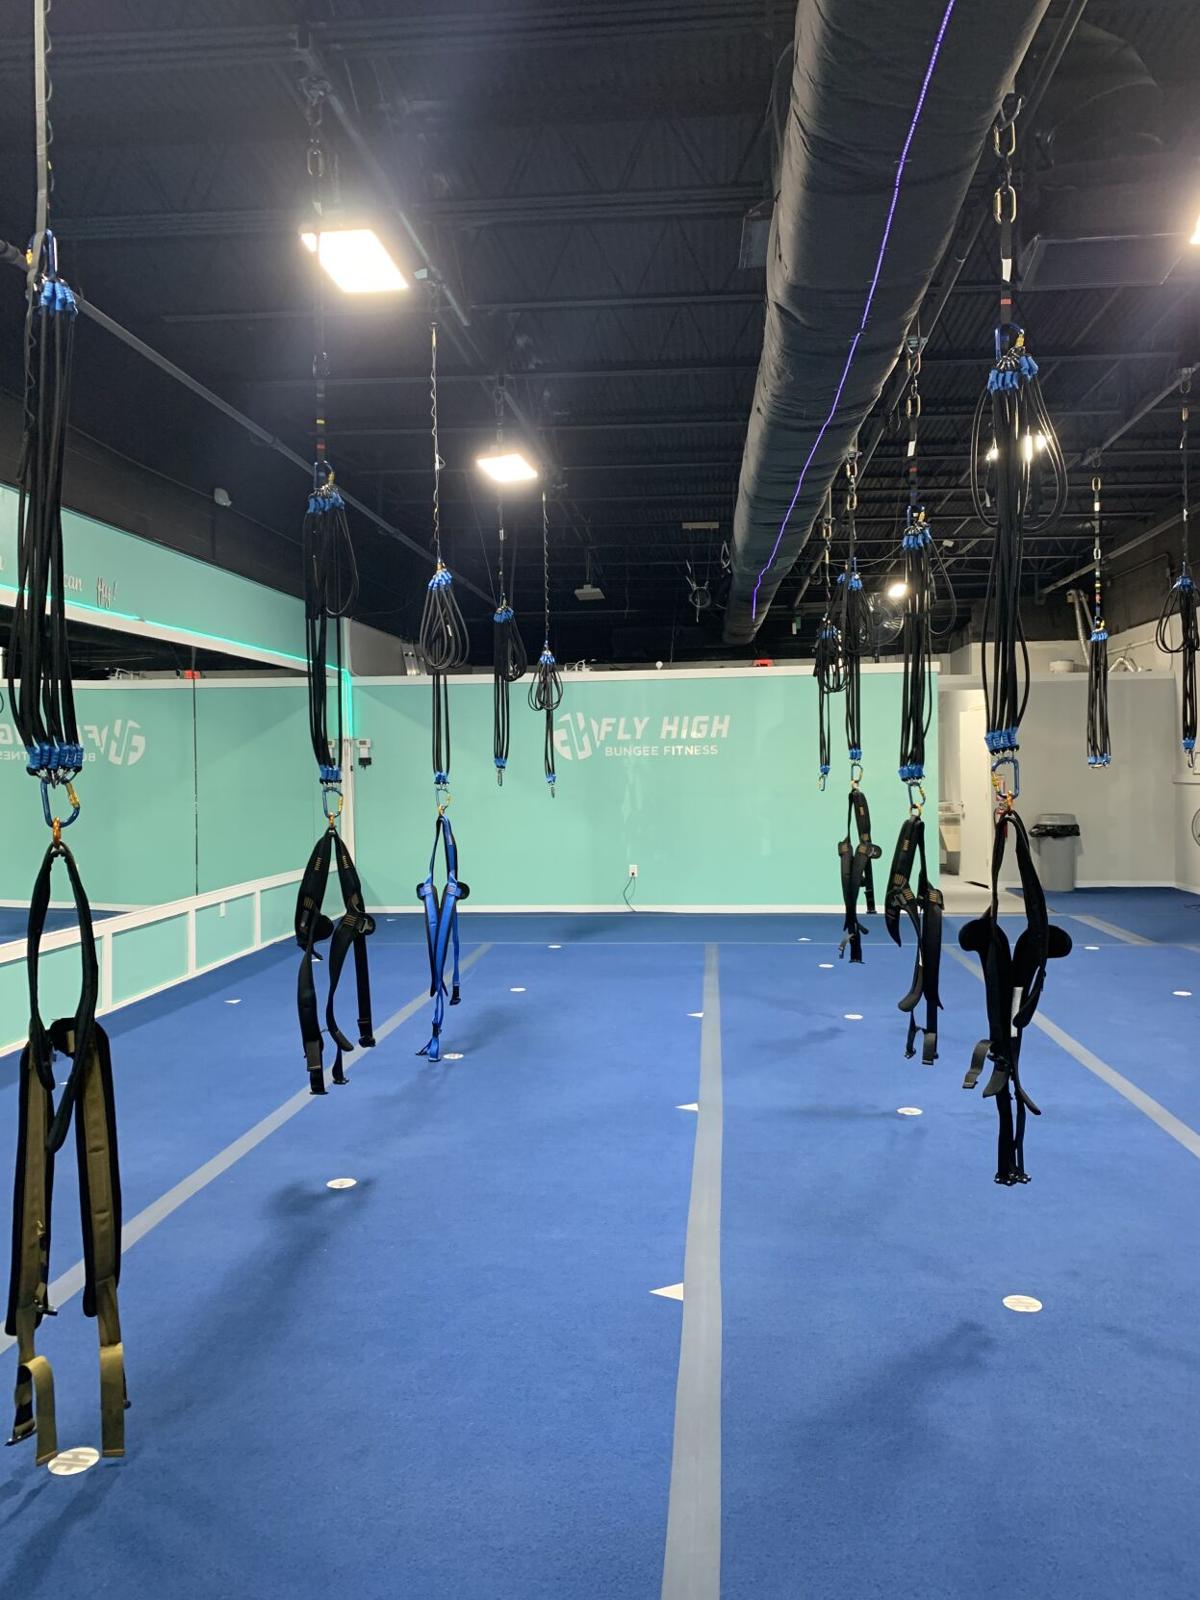 Region's first bungee fitness studio opens in Fayetteville - Talk